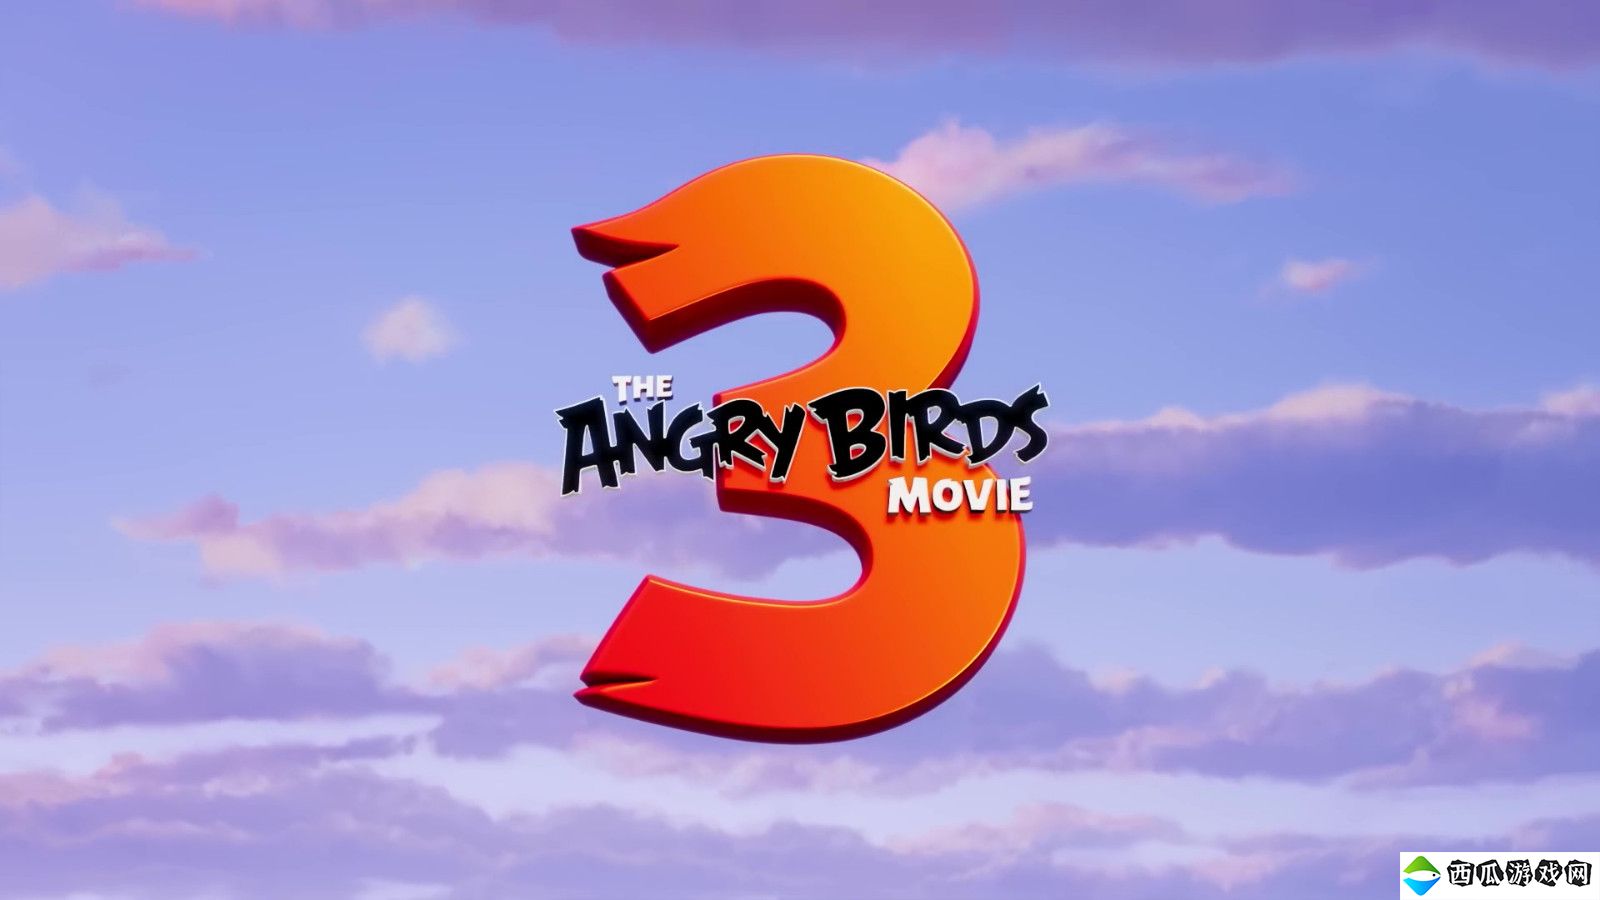 游戏改编电影《愤怒的小鸟》第三部前导预告 上映日期待定